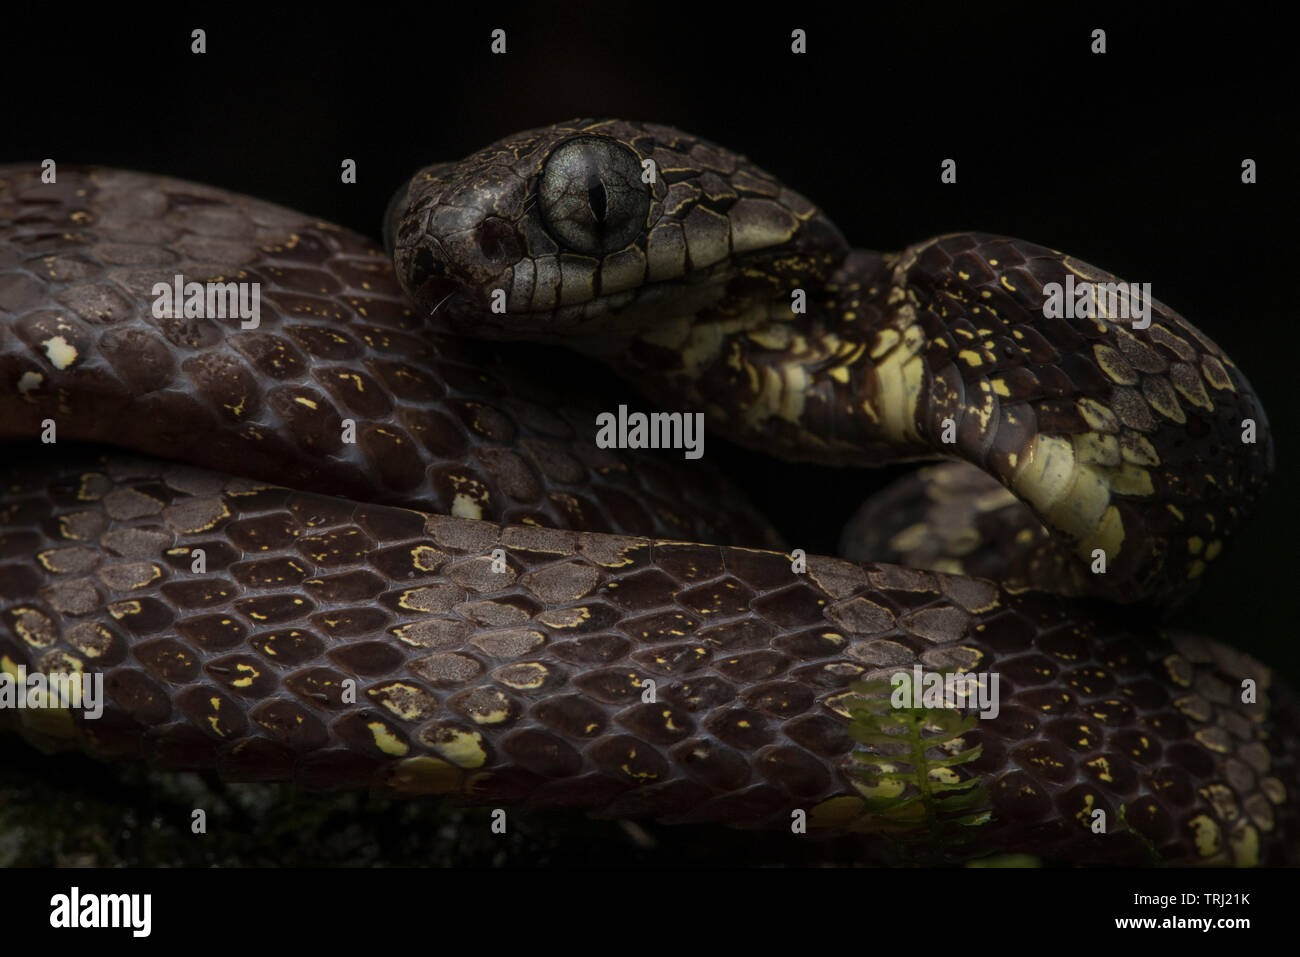 Ein neotropischer Schnecke Esser (Dipsas indica) von Yasuni Nationalpark, die Schlangen ausschließlich ernähren sich von Schnecken. Stockfoto